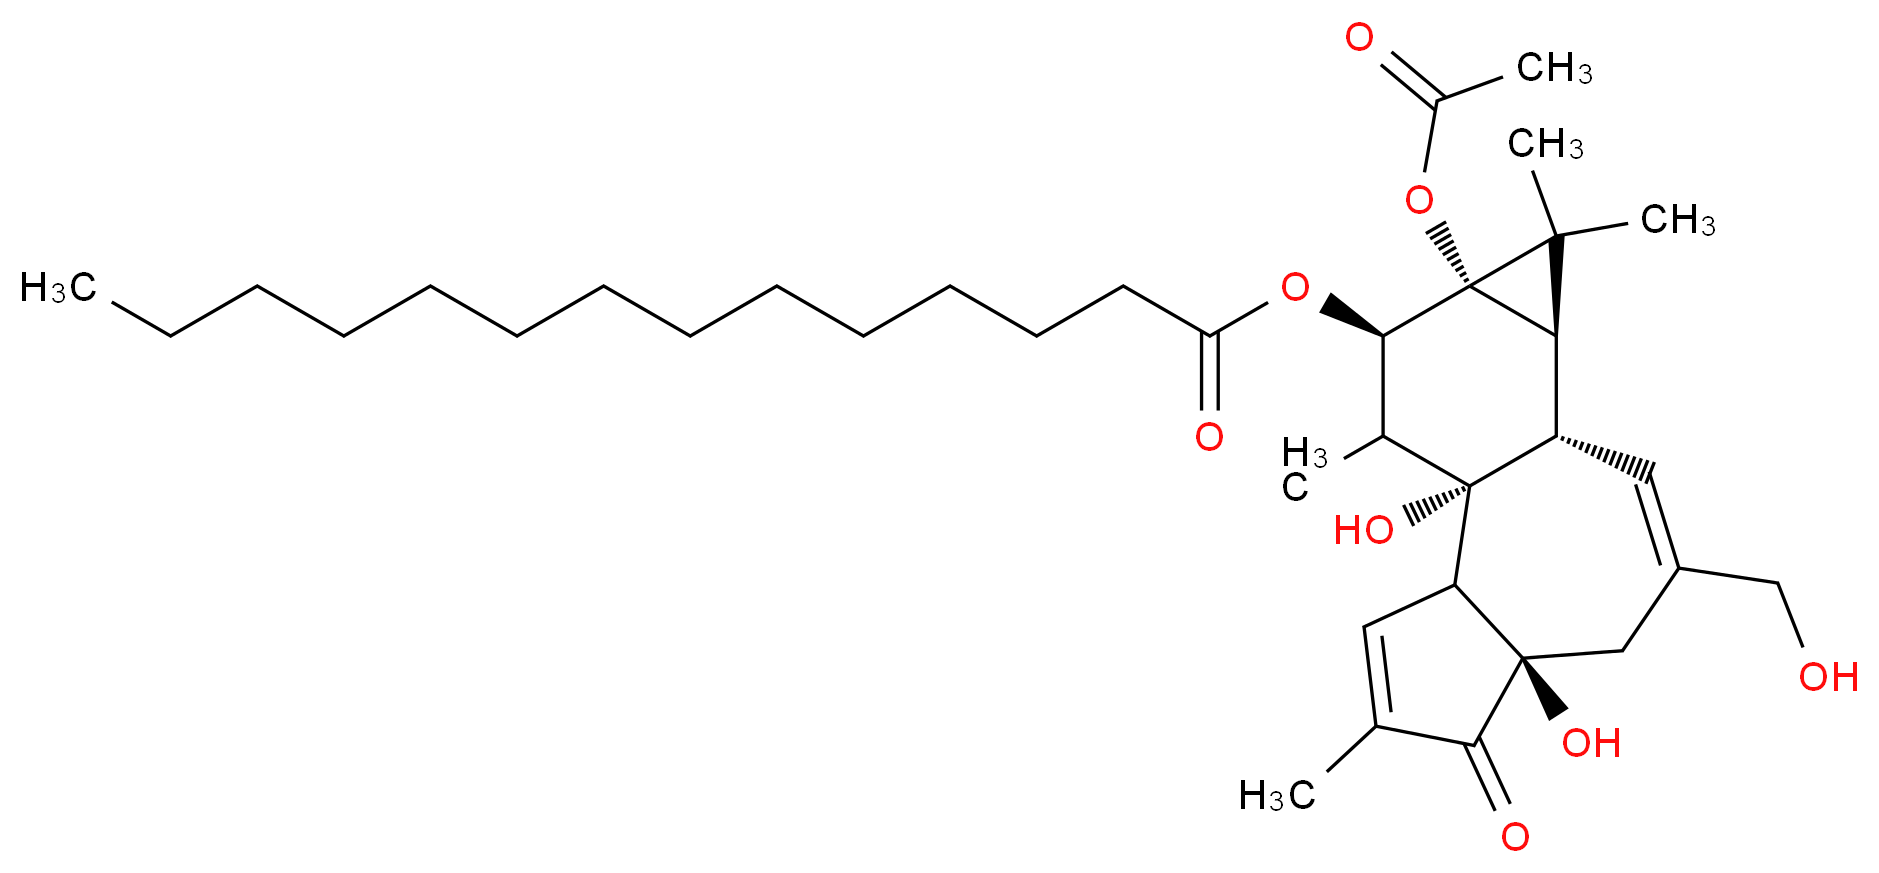 12-O-Tetradecanoylphorbol-13-acetate_Molecular_structure_CAS_16561-29-8)